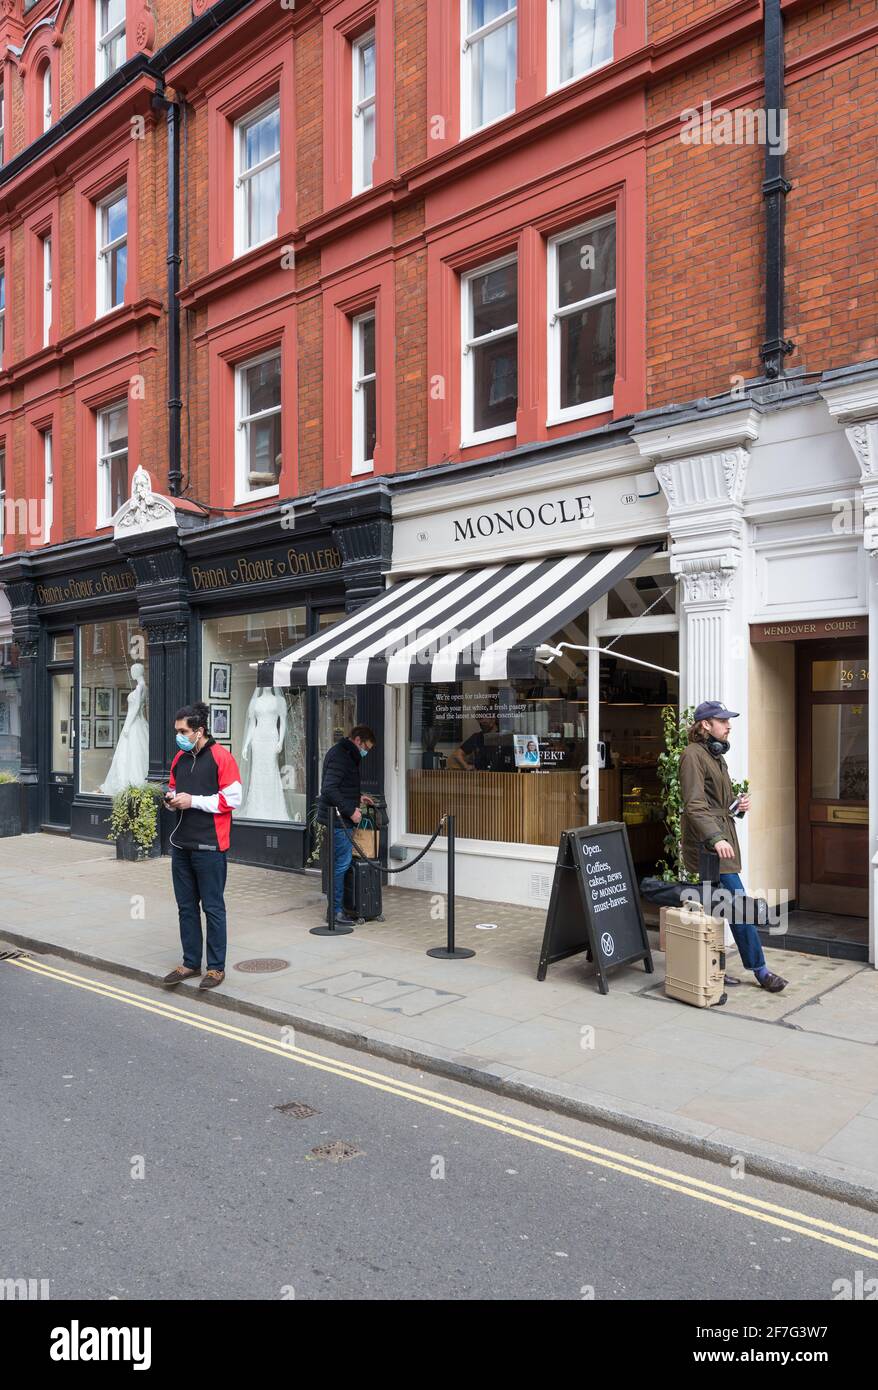 Das Monocle Cafe Café. Drei Personen stehen auf der Straße vor dem Café. Chiltern Street, London, England, Großbritannien Stockfoto